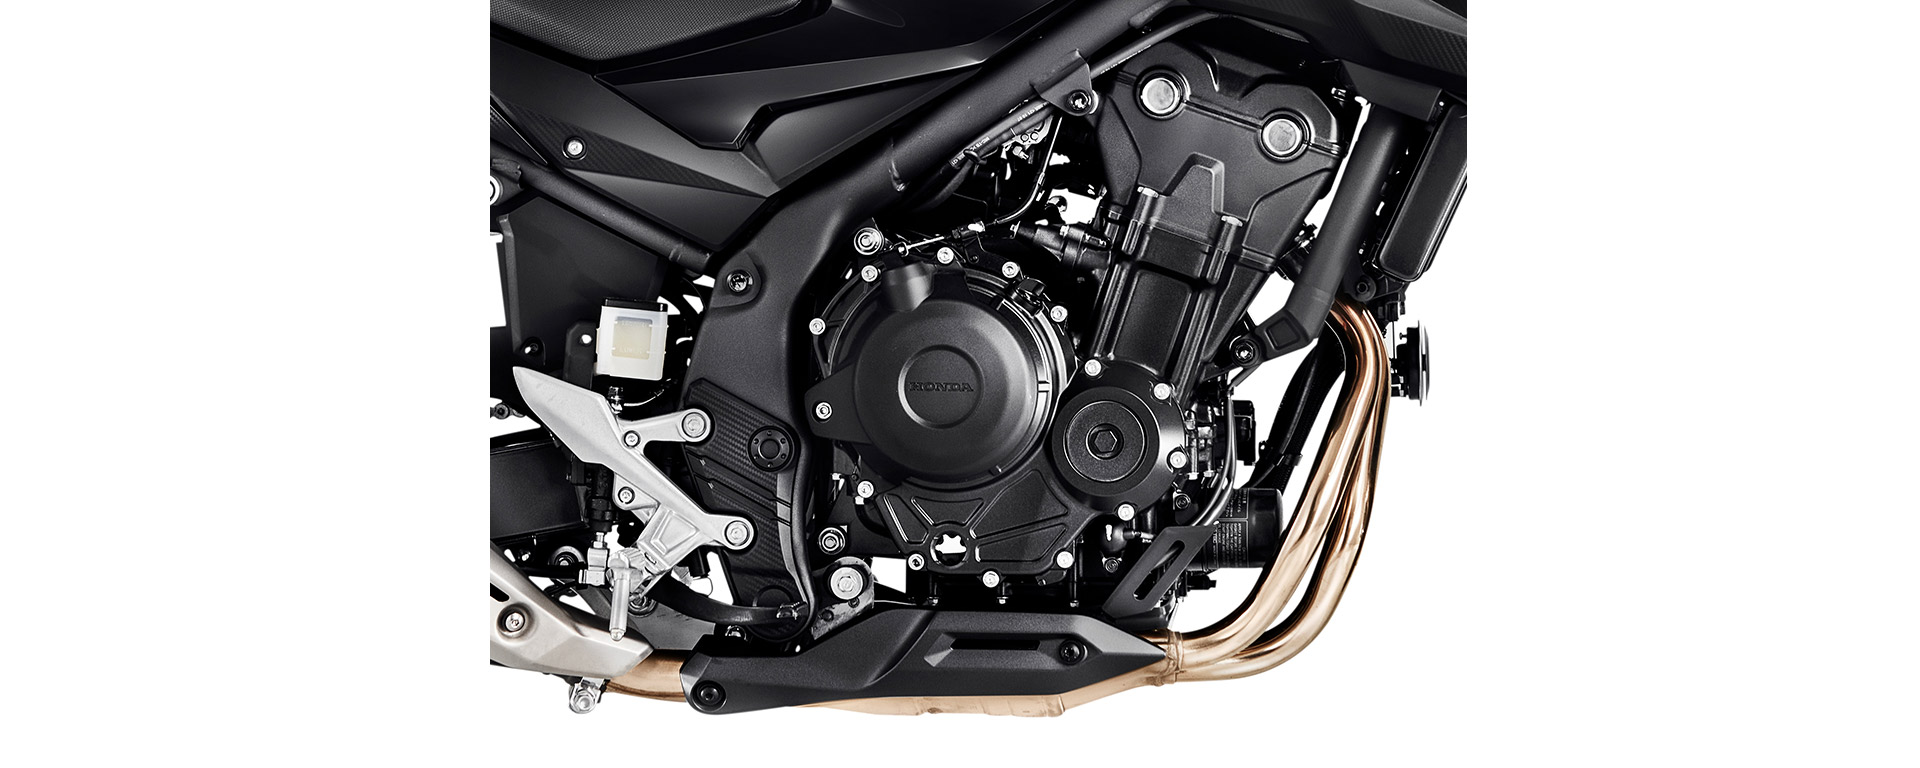 Honda CB 500F - DVR Motos